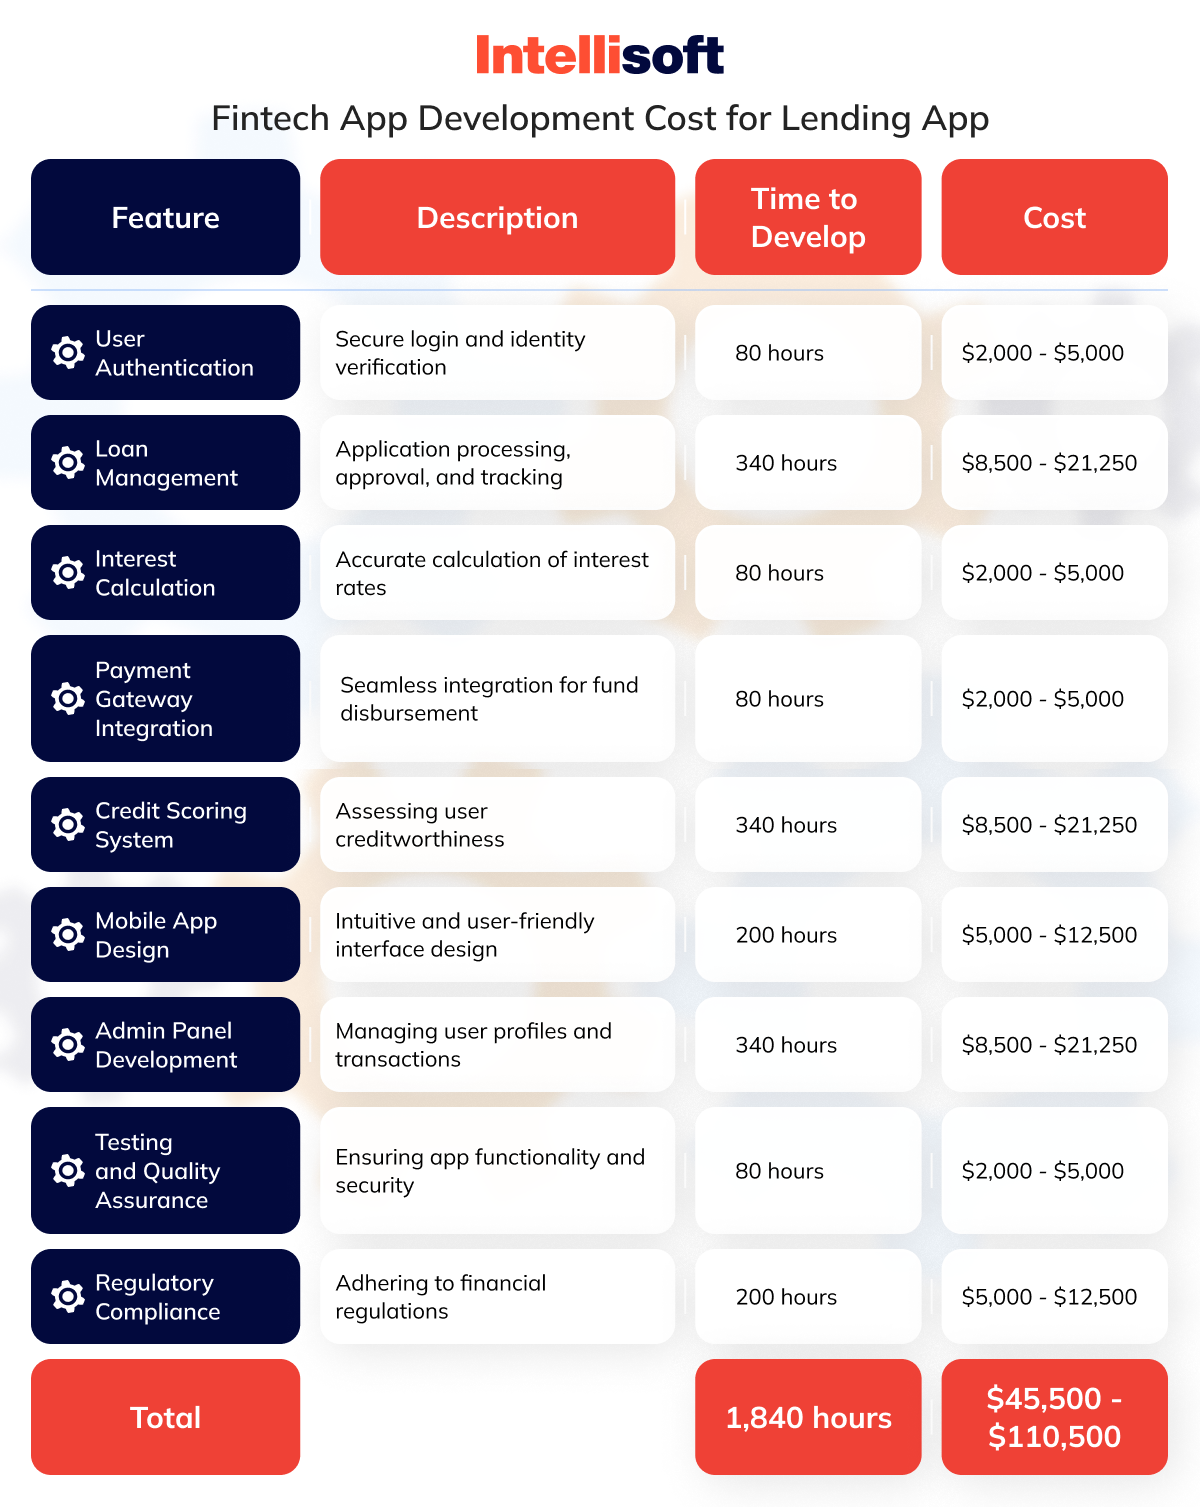 Fintech App Development Cost for Lending App